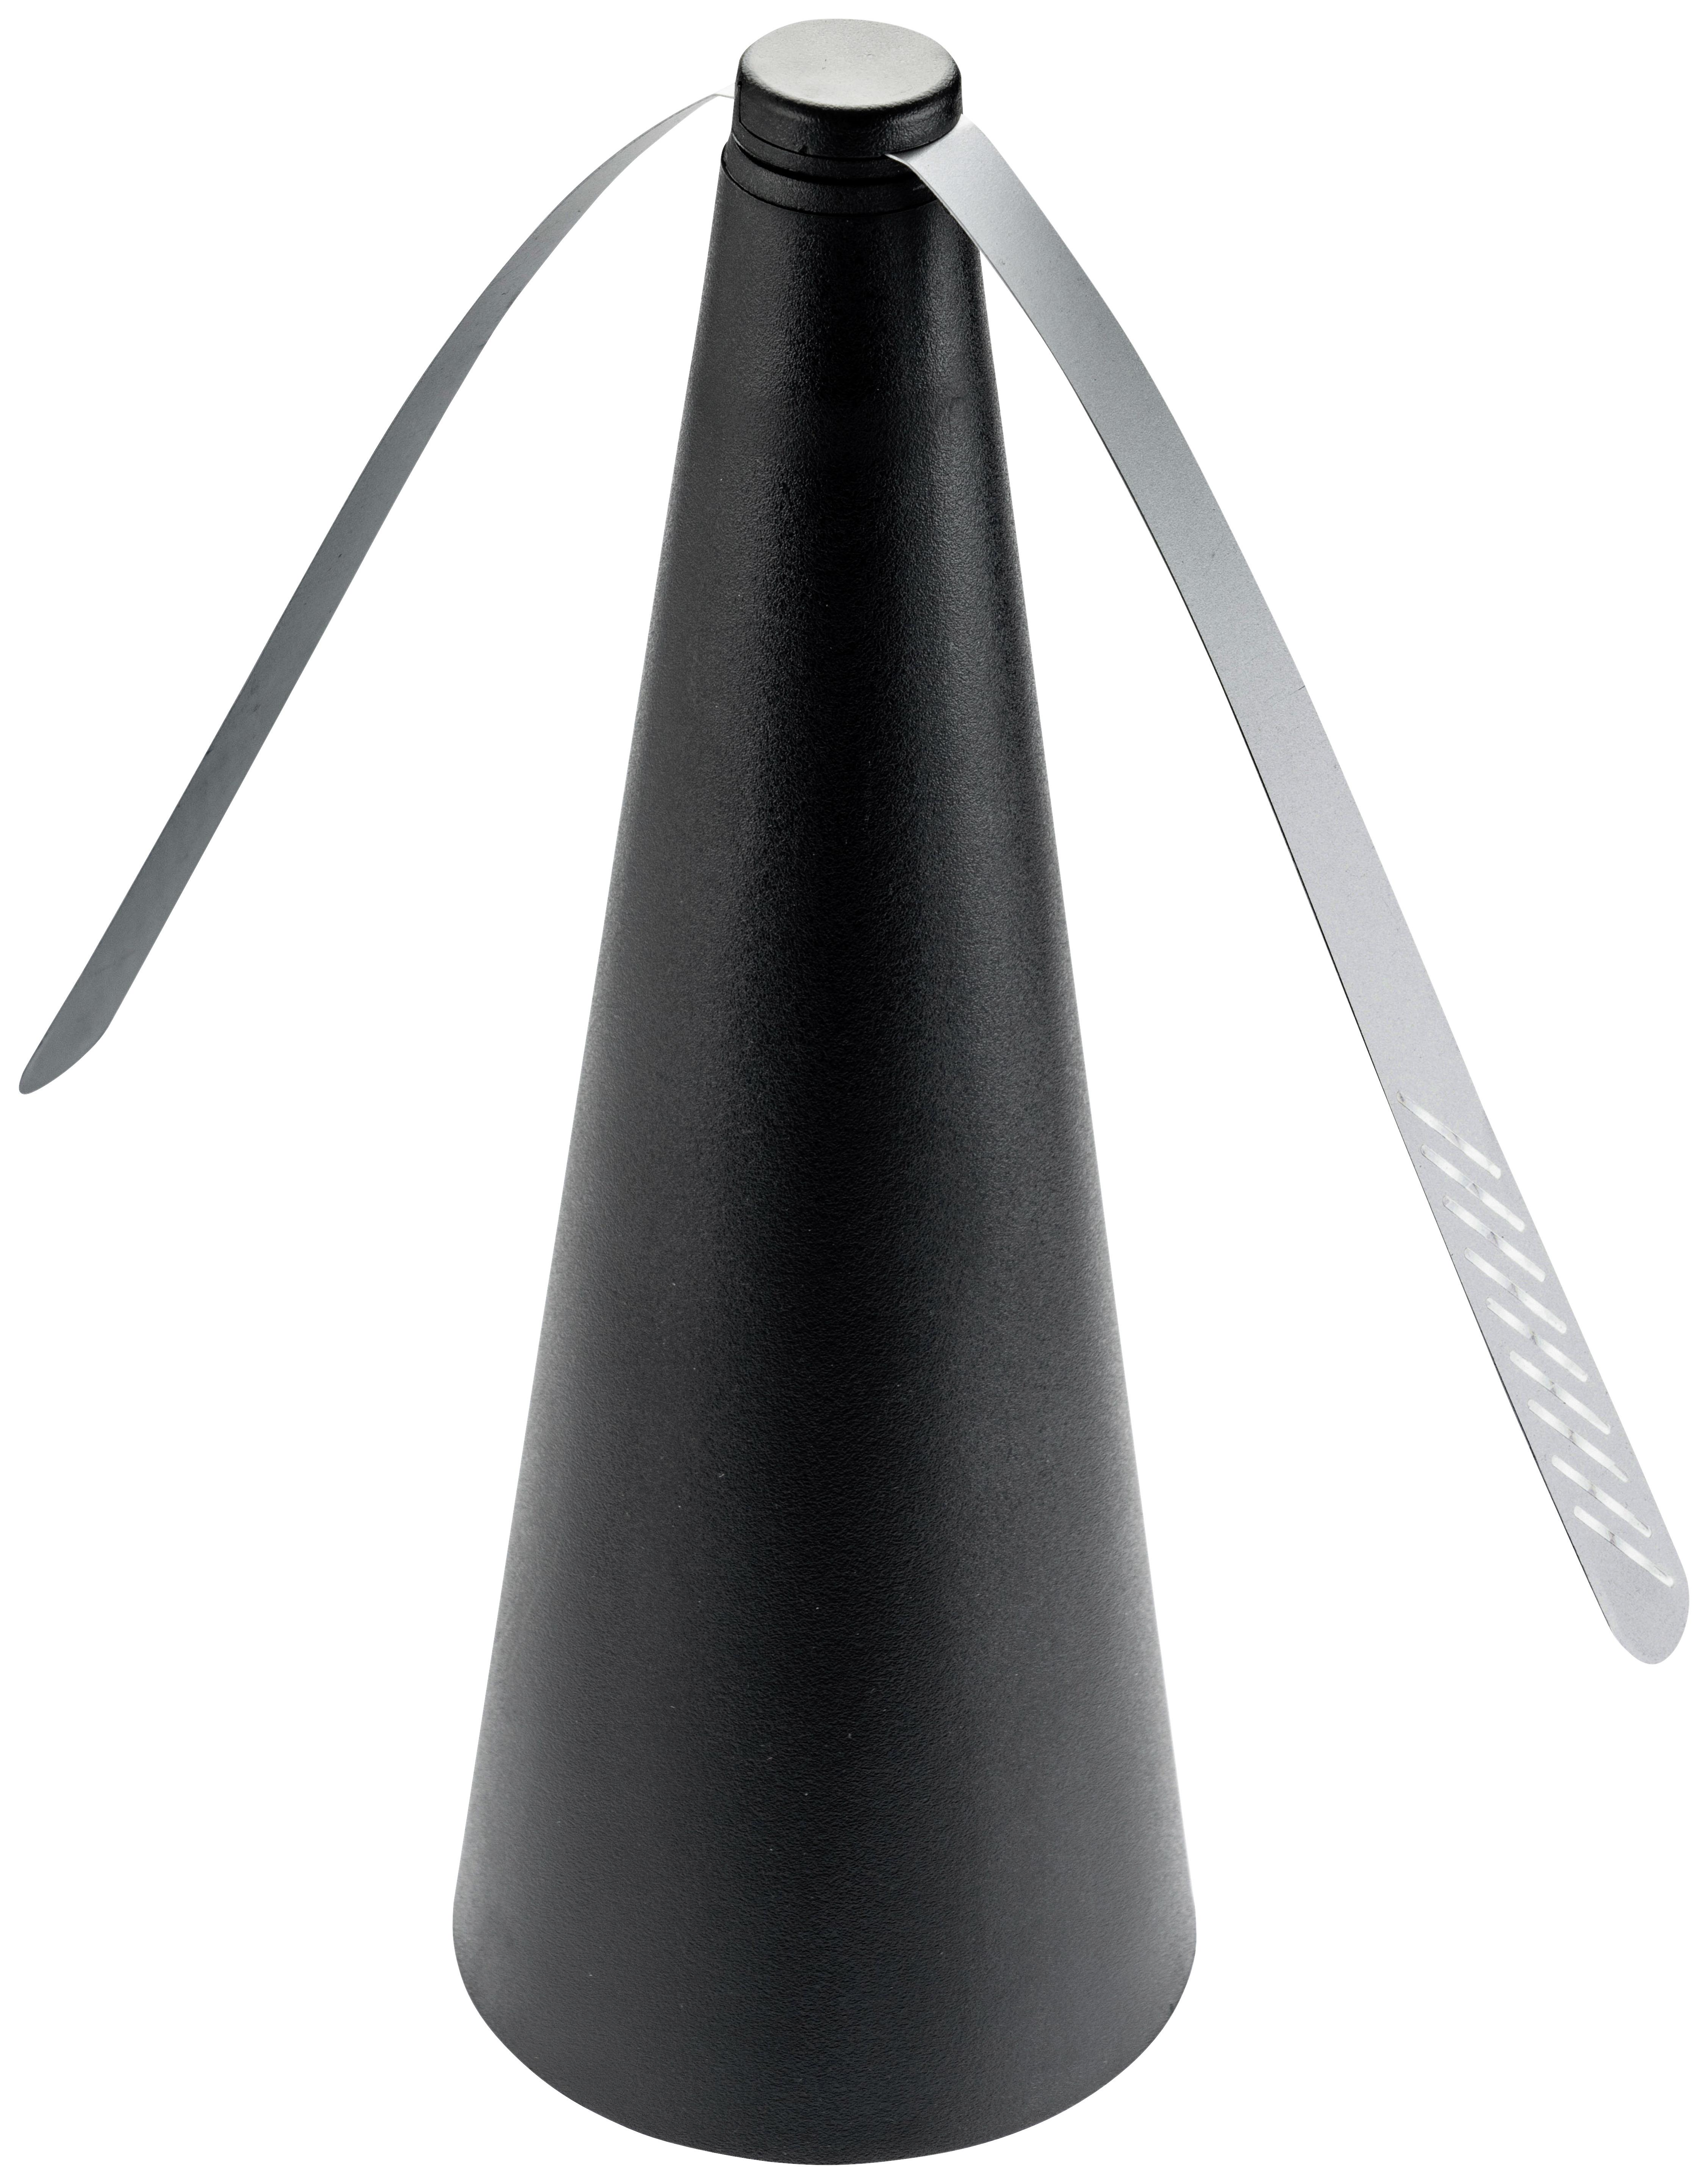 Mini Ventilátor Flye - černá, Konvenční, plast (8,4/25cm) - Modern Living